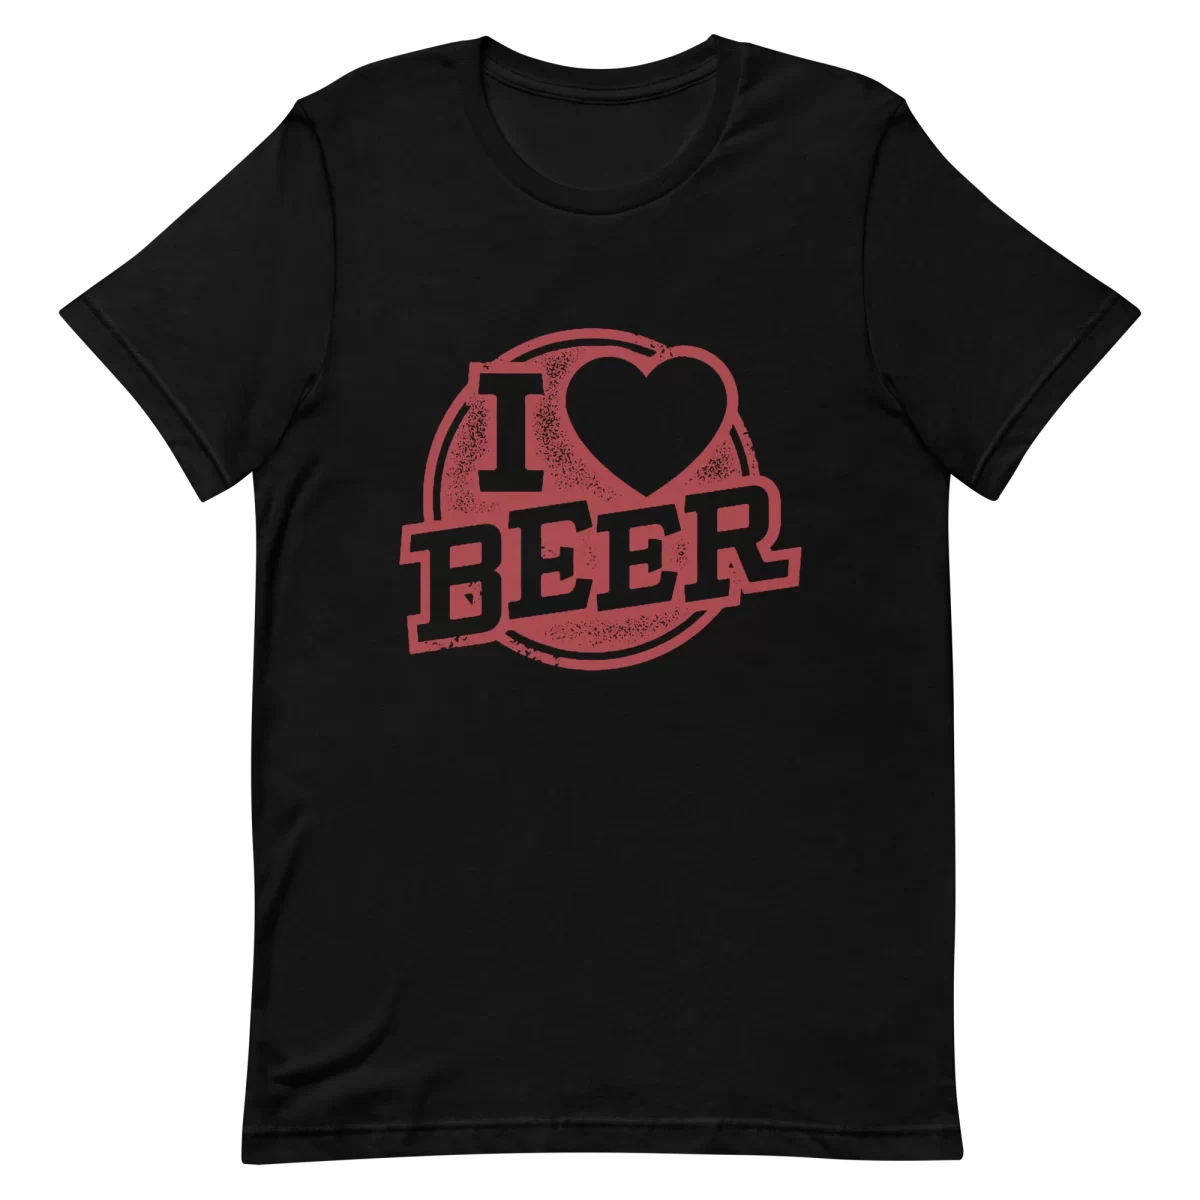 Unisex T-Shirt - I Love Beer - Black